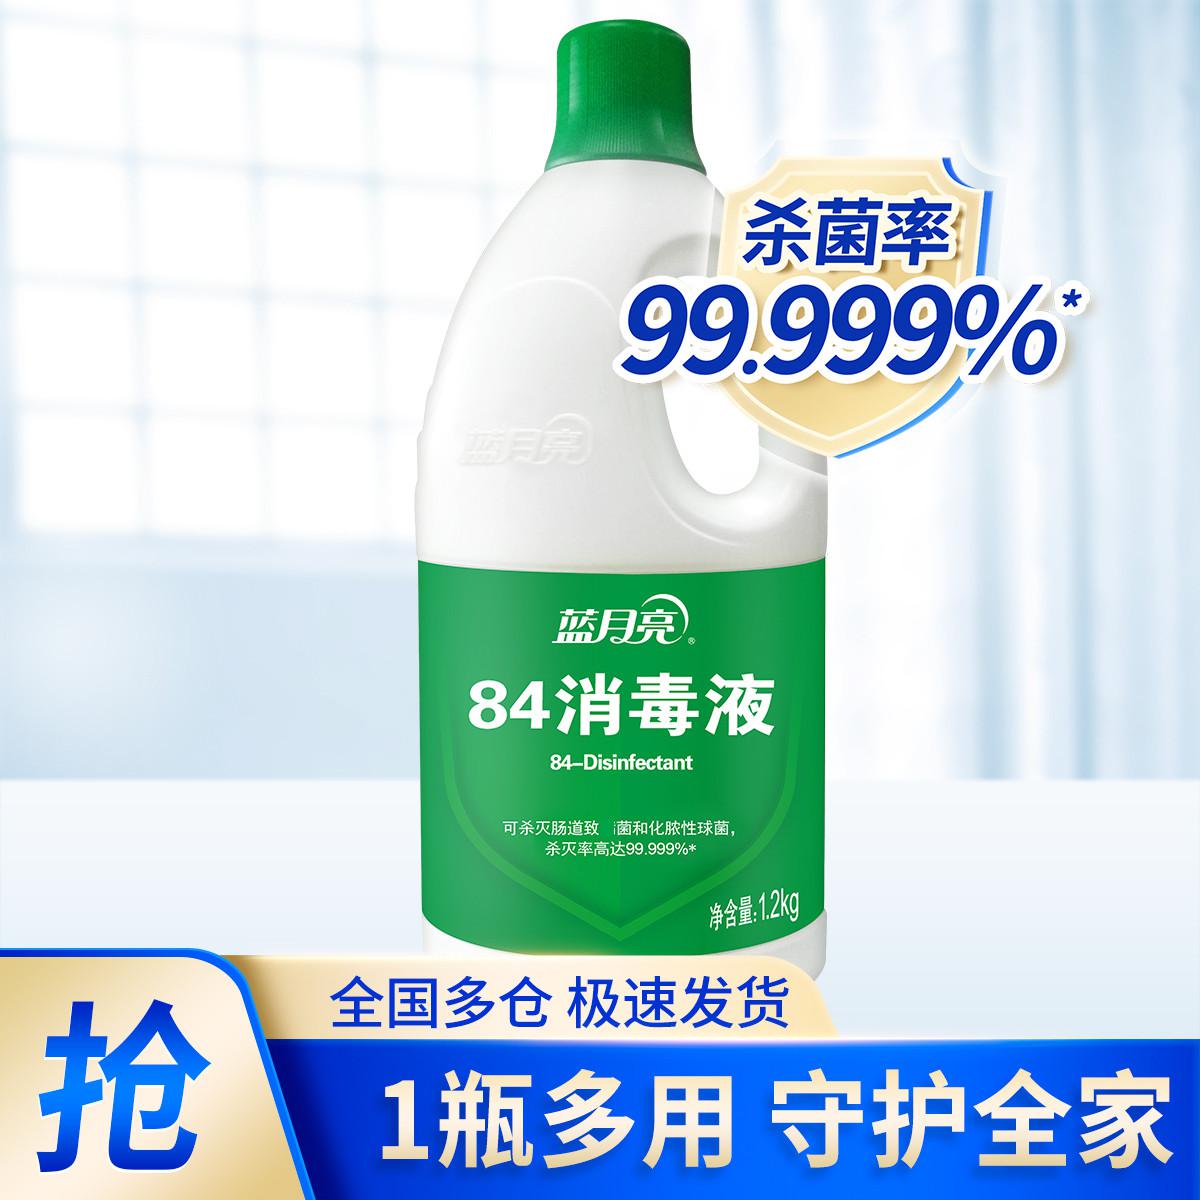 84消毒液1.2kg瓶 有效杀菌99.999% 杀菌消毒家用常备